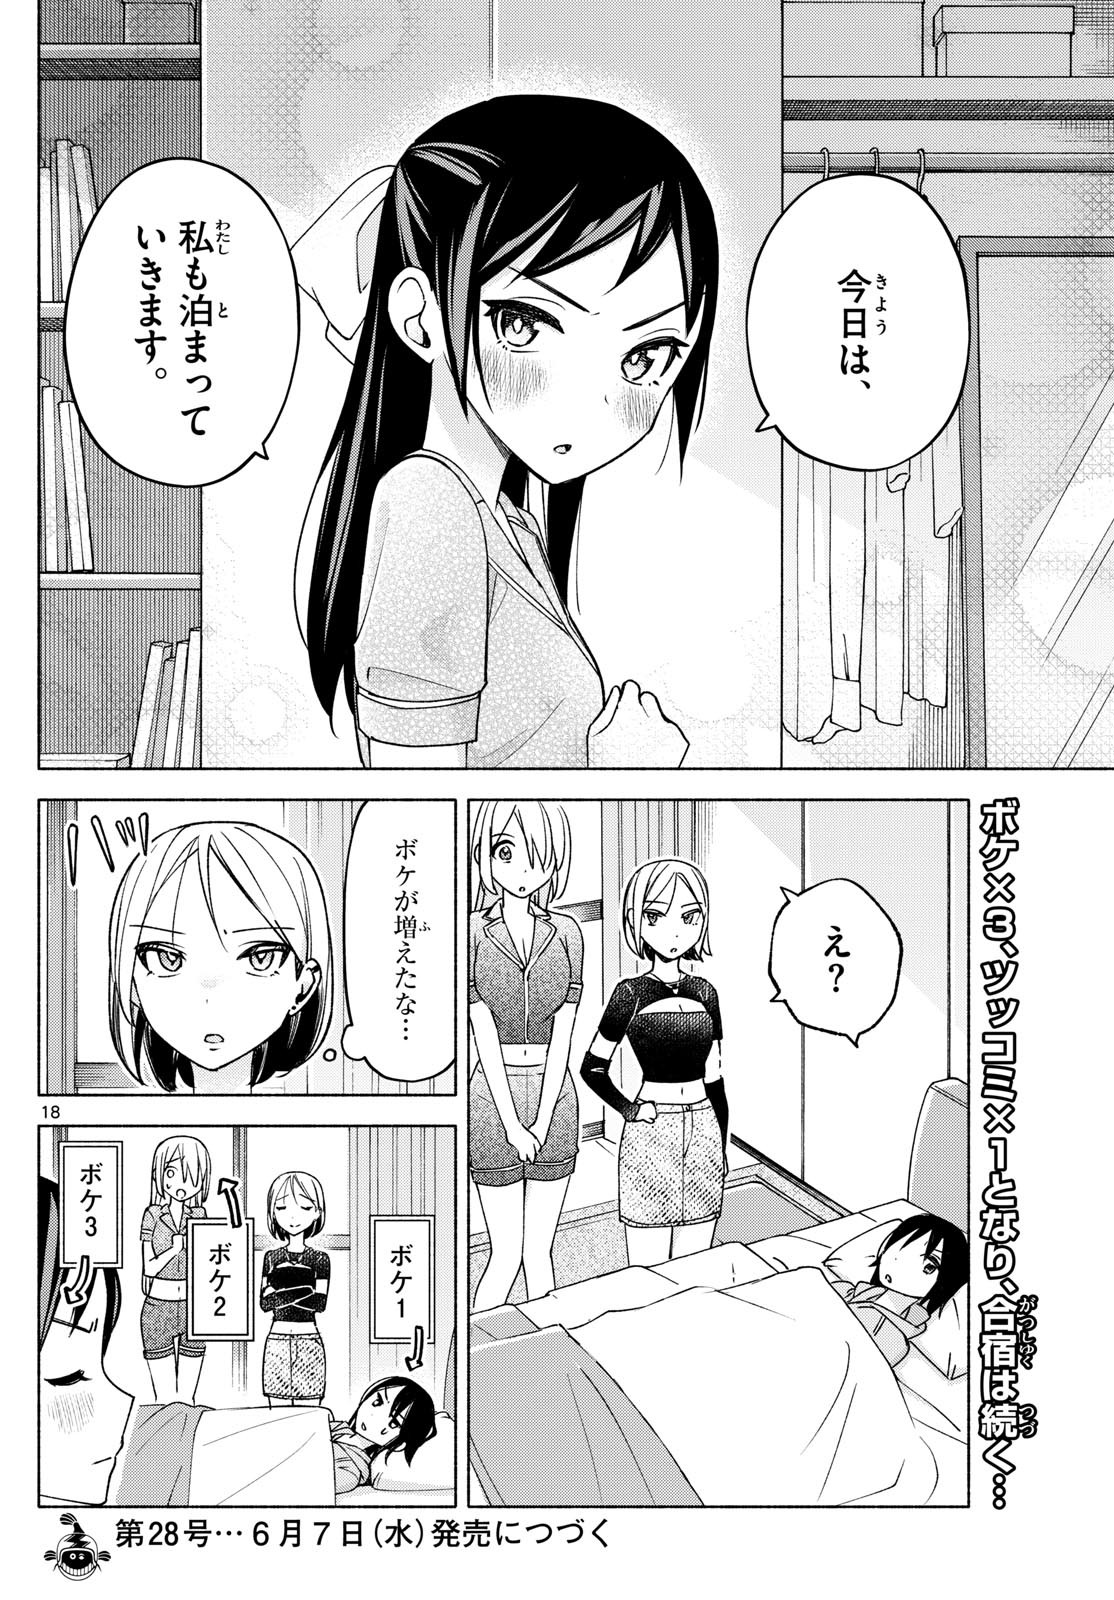 Kimi to Warui Koto ga Shitai - Chapter 030 - Page 18